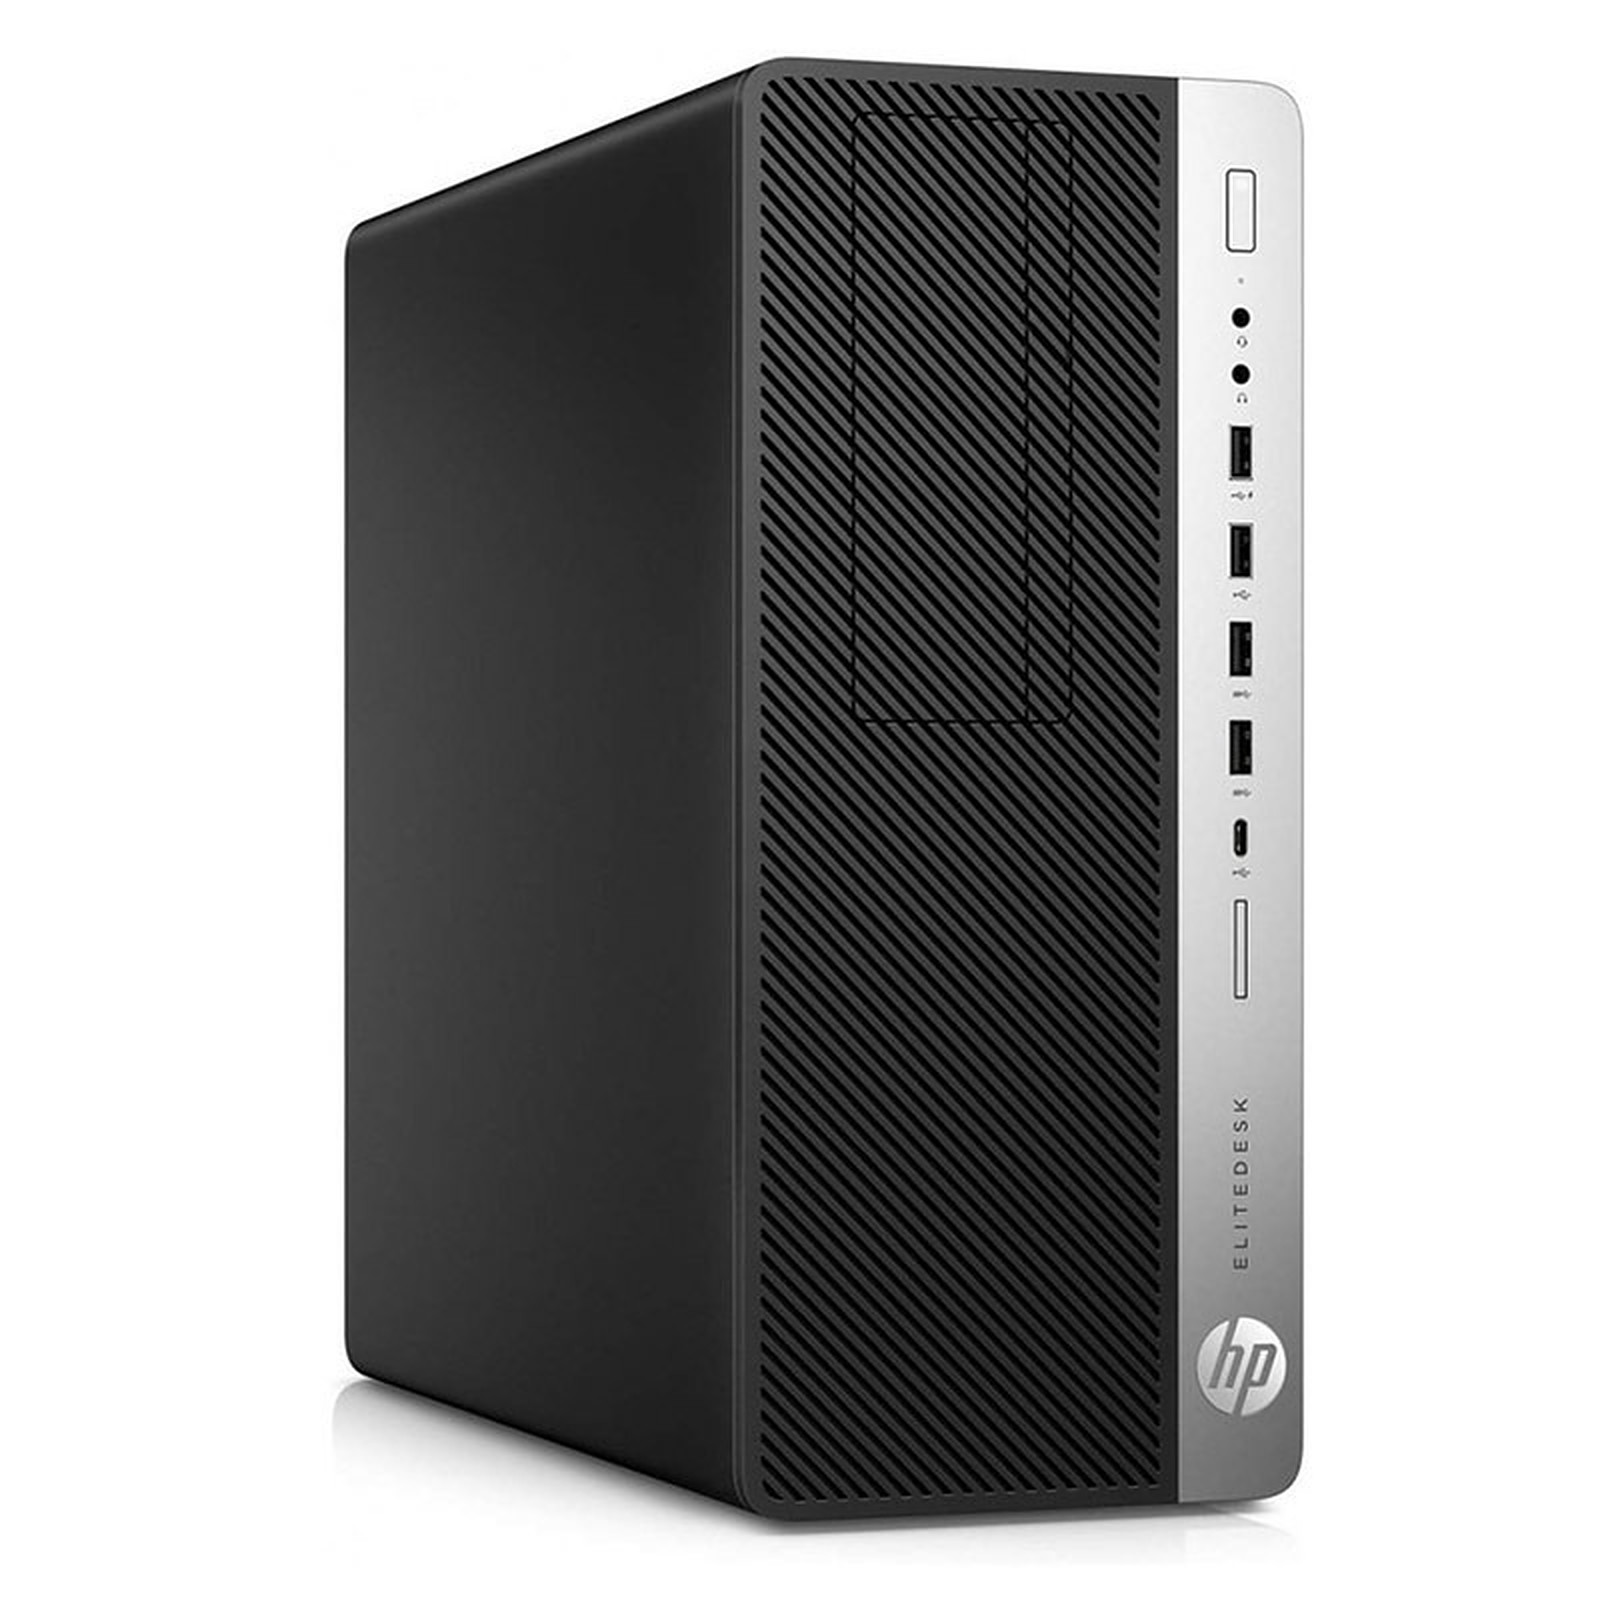 HP LPG-800G3 (I5651624S) · Reconditionne - PC de bureau reconditionne HP